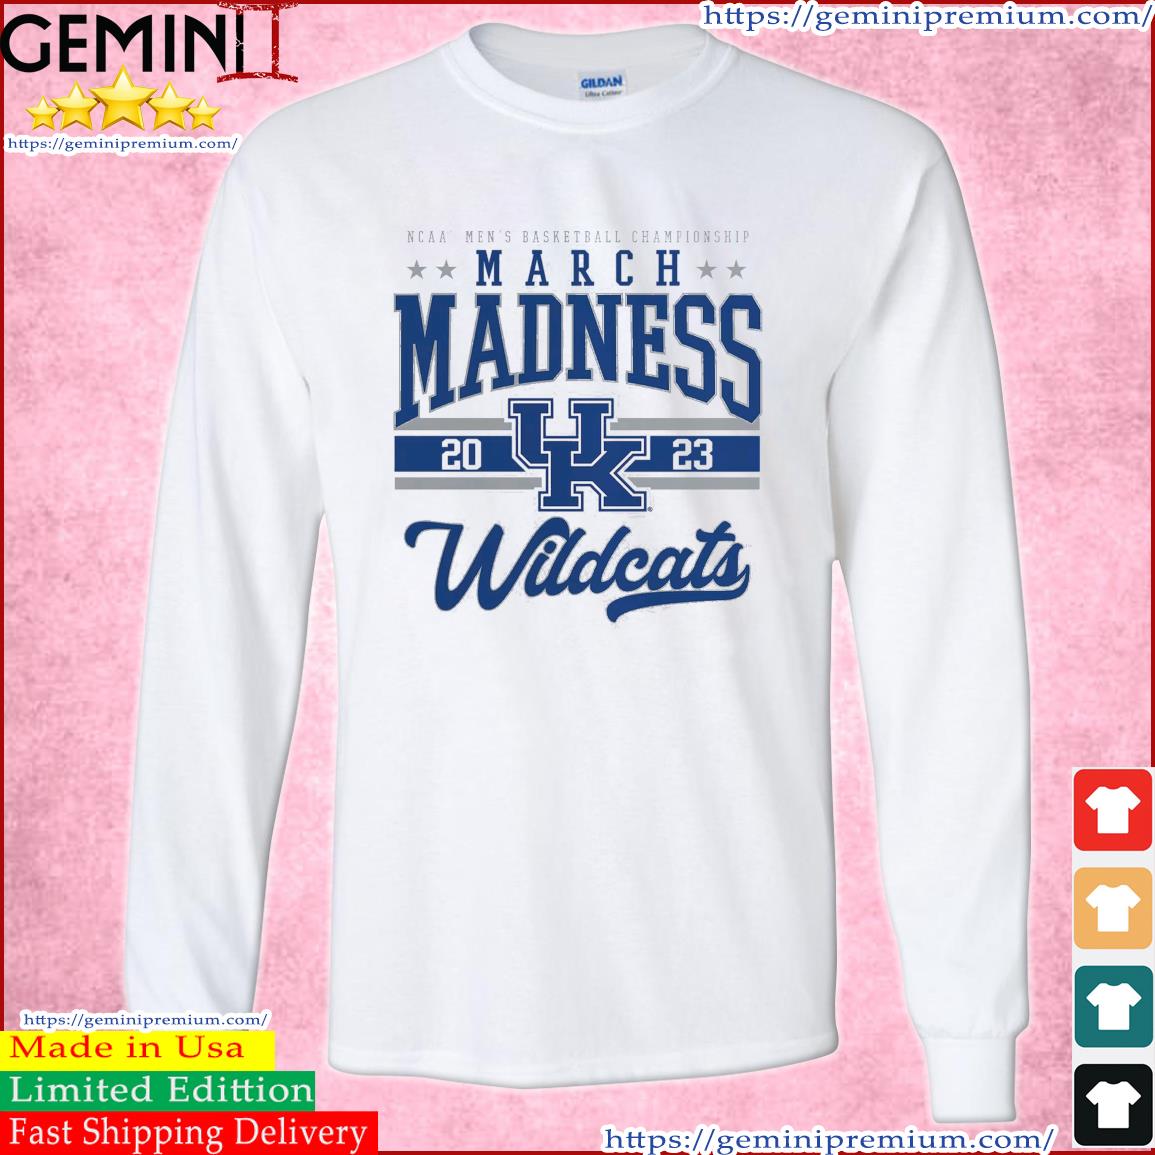 Kentucky Wildcats NCAA Men's Basketball Tournament March Madness 2023 Shirt Long Sleeve Tee